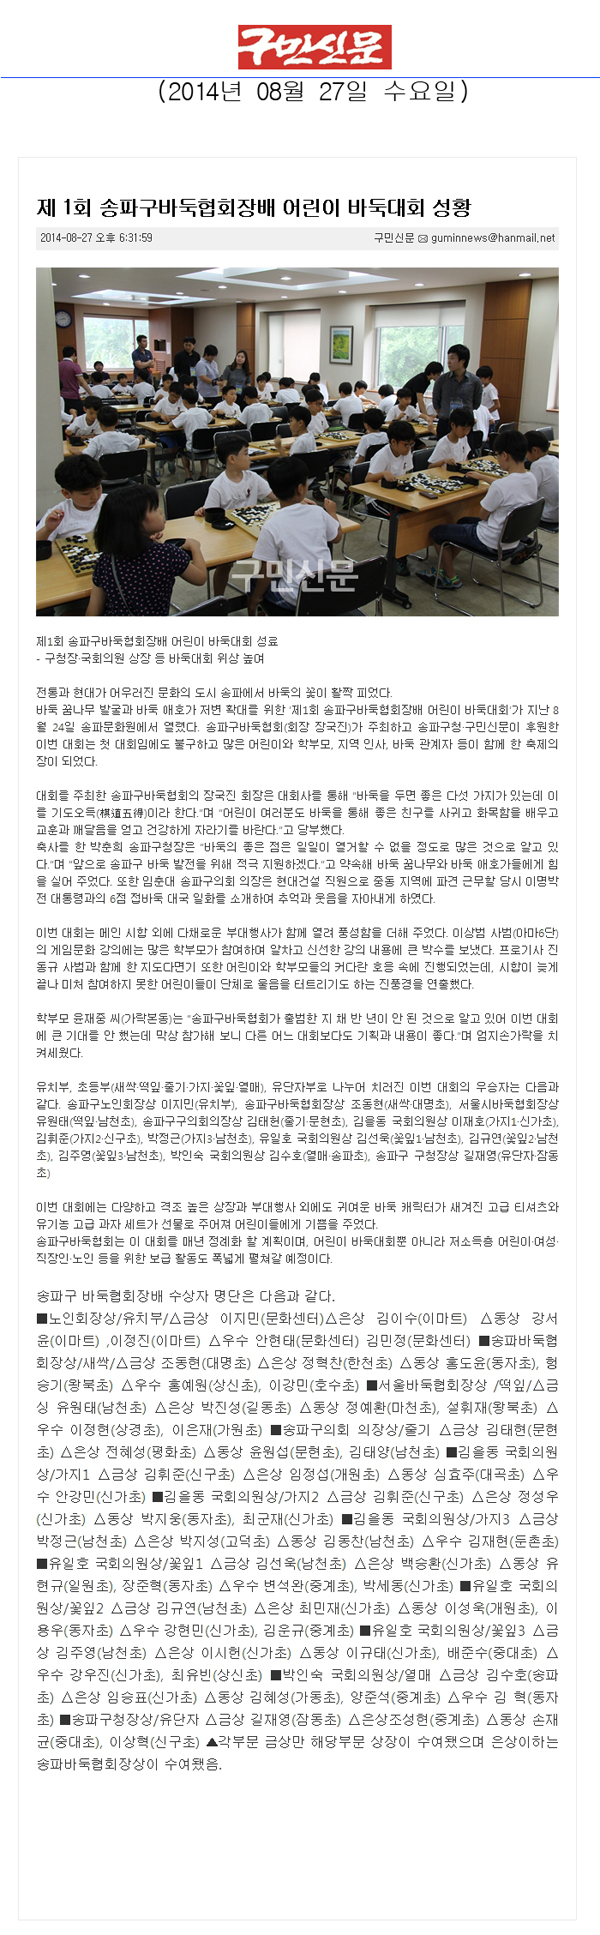 제 1회 송파구바둑협회장배 어린이 바둑대회 성황 [구민신문] - 1